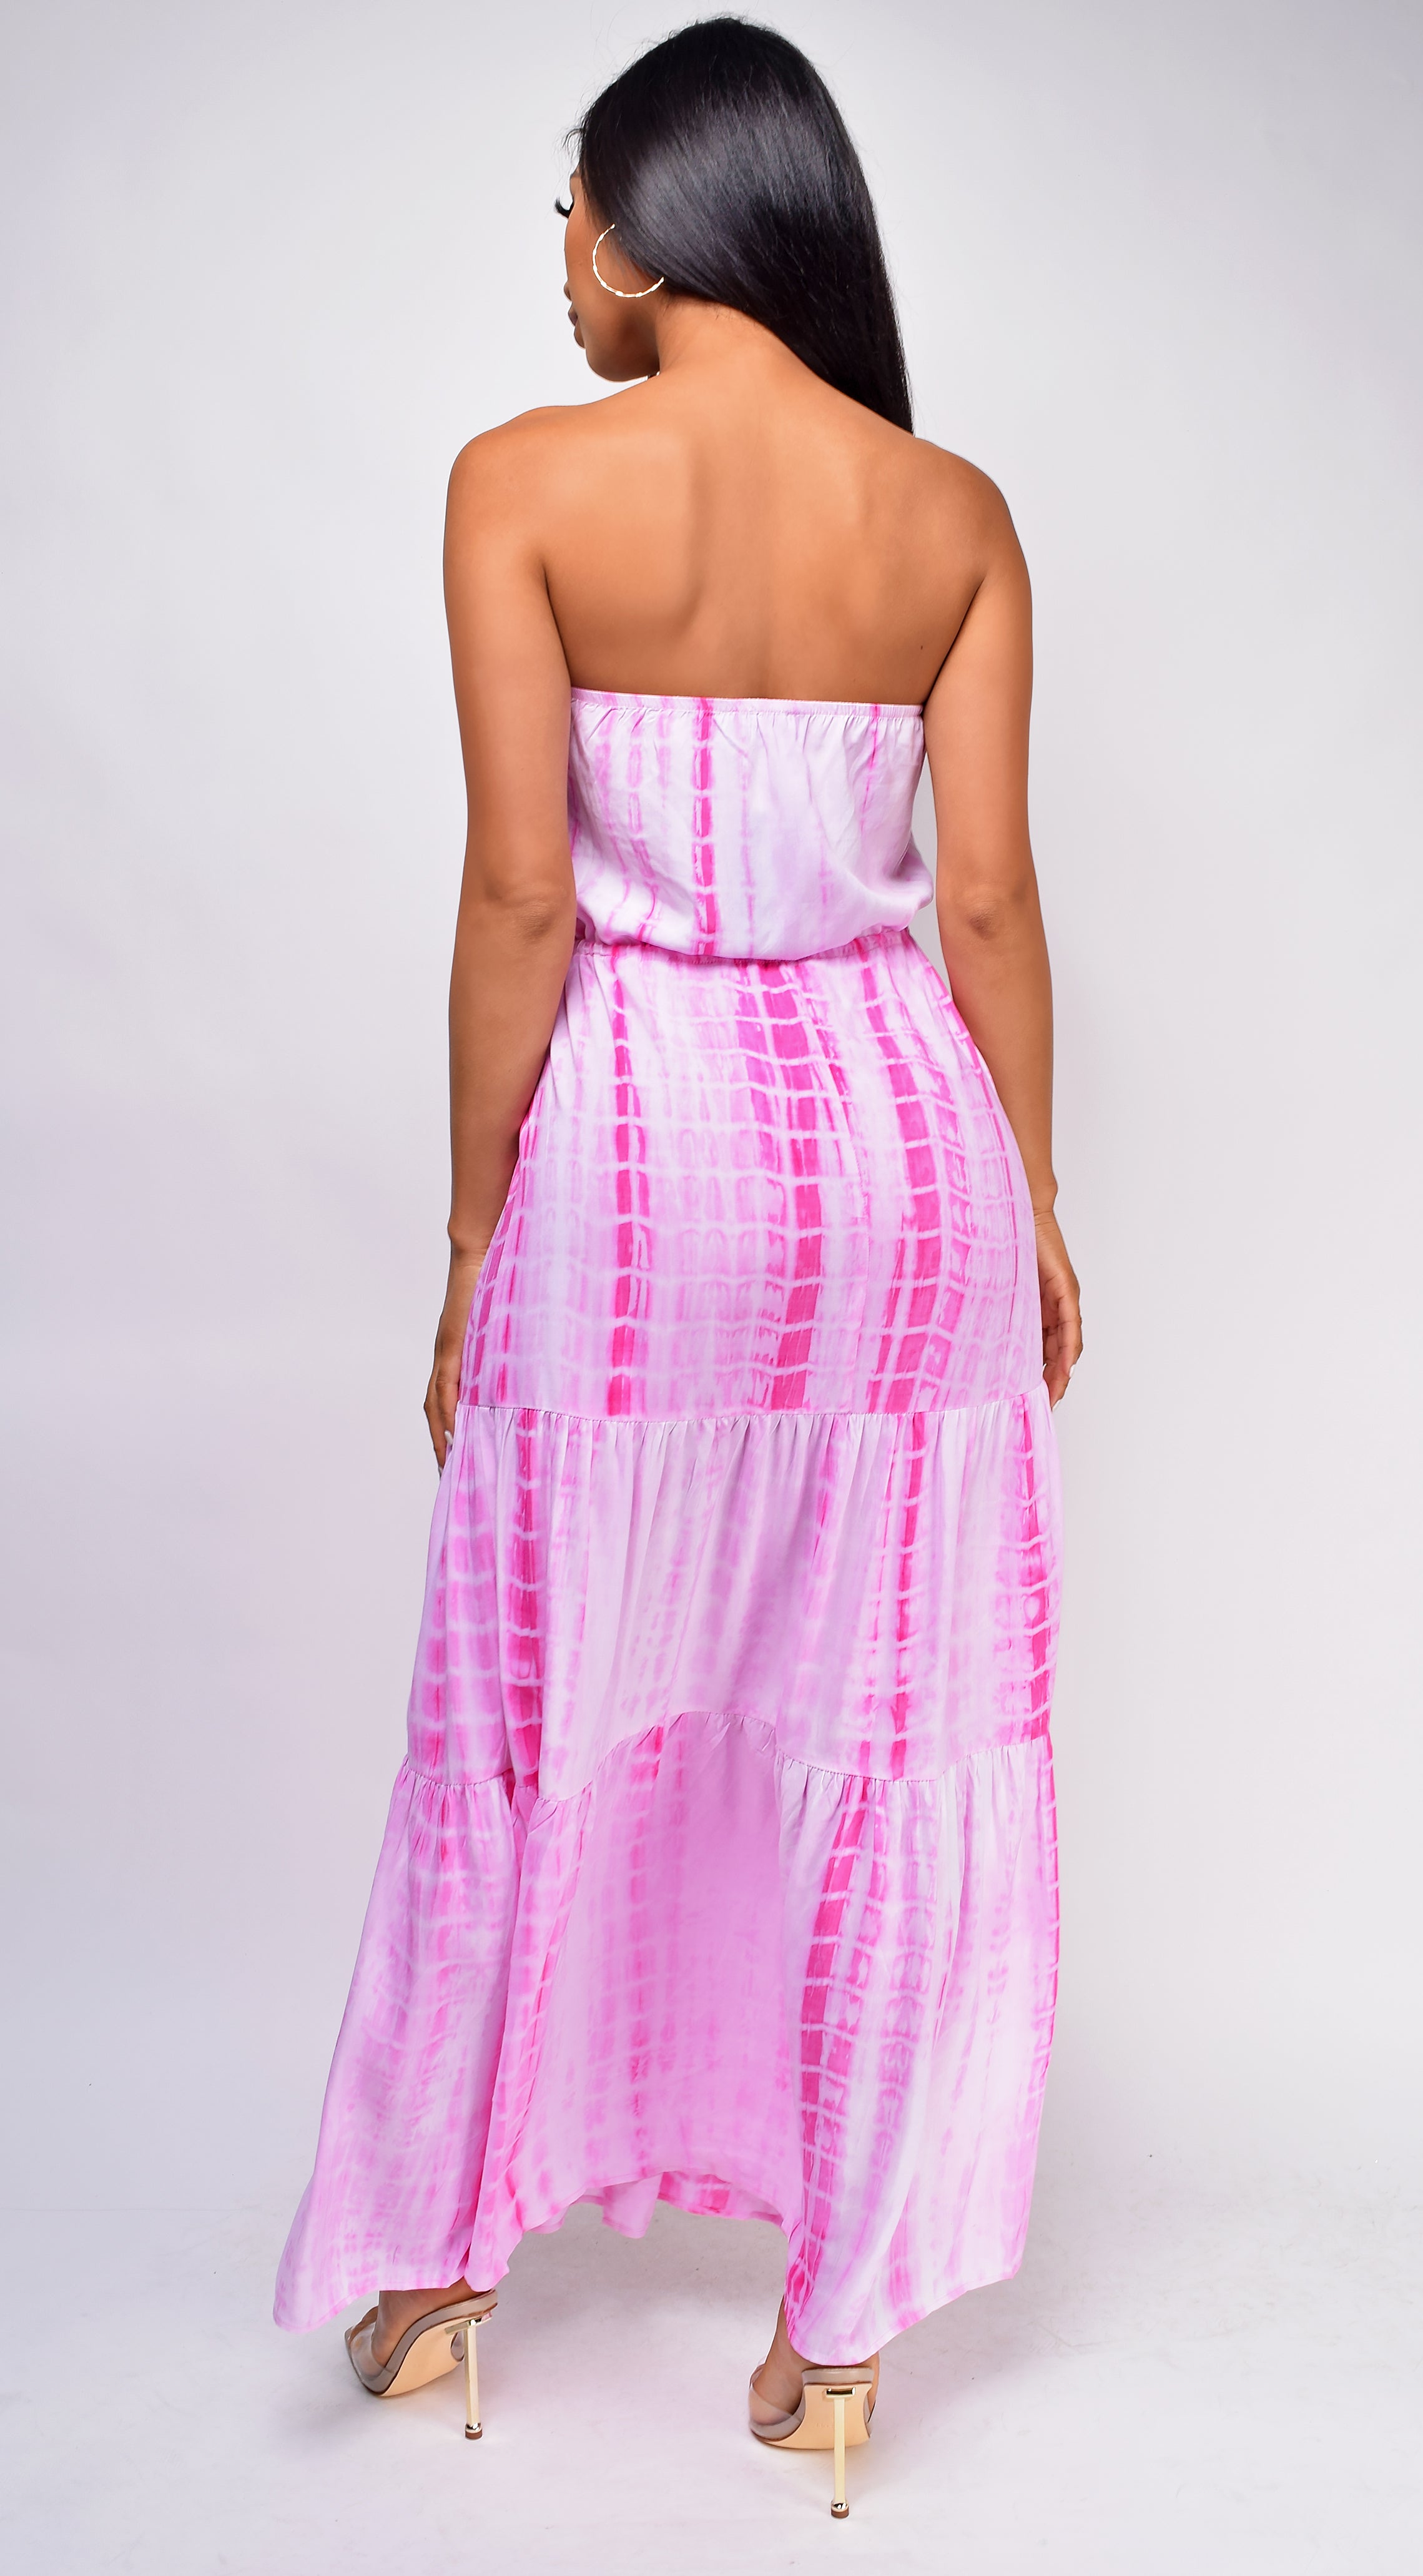 Boracay Pink Tie Dye Dress